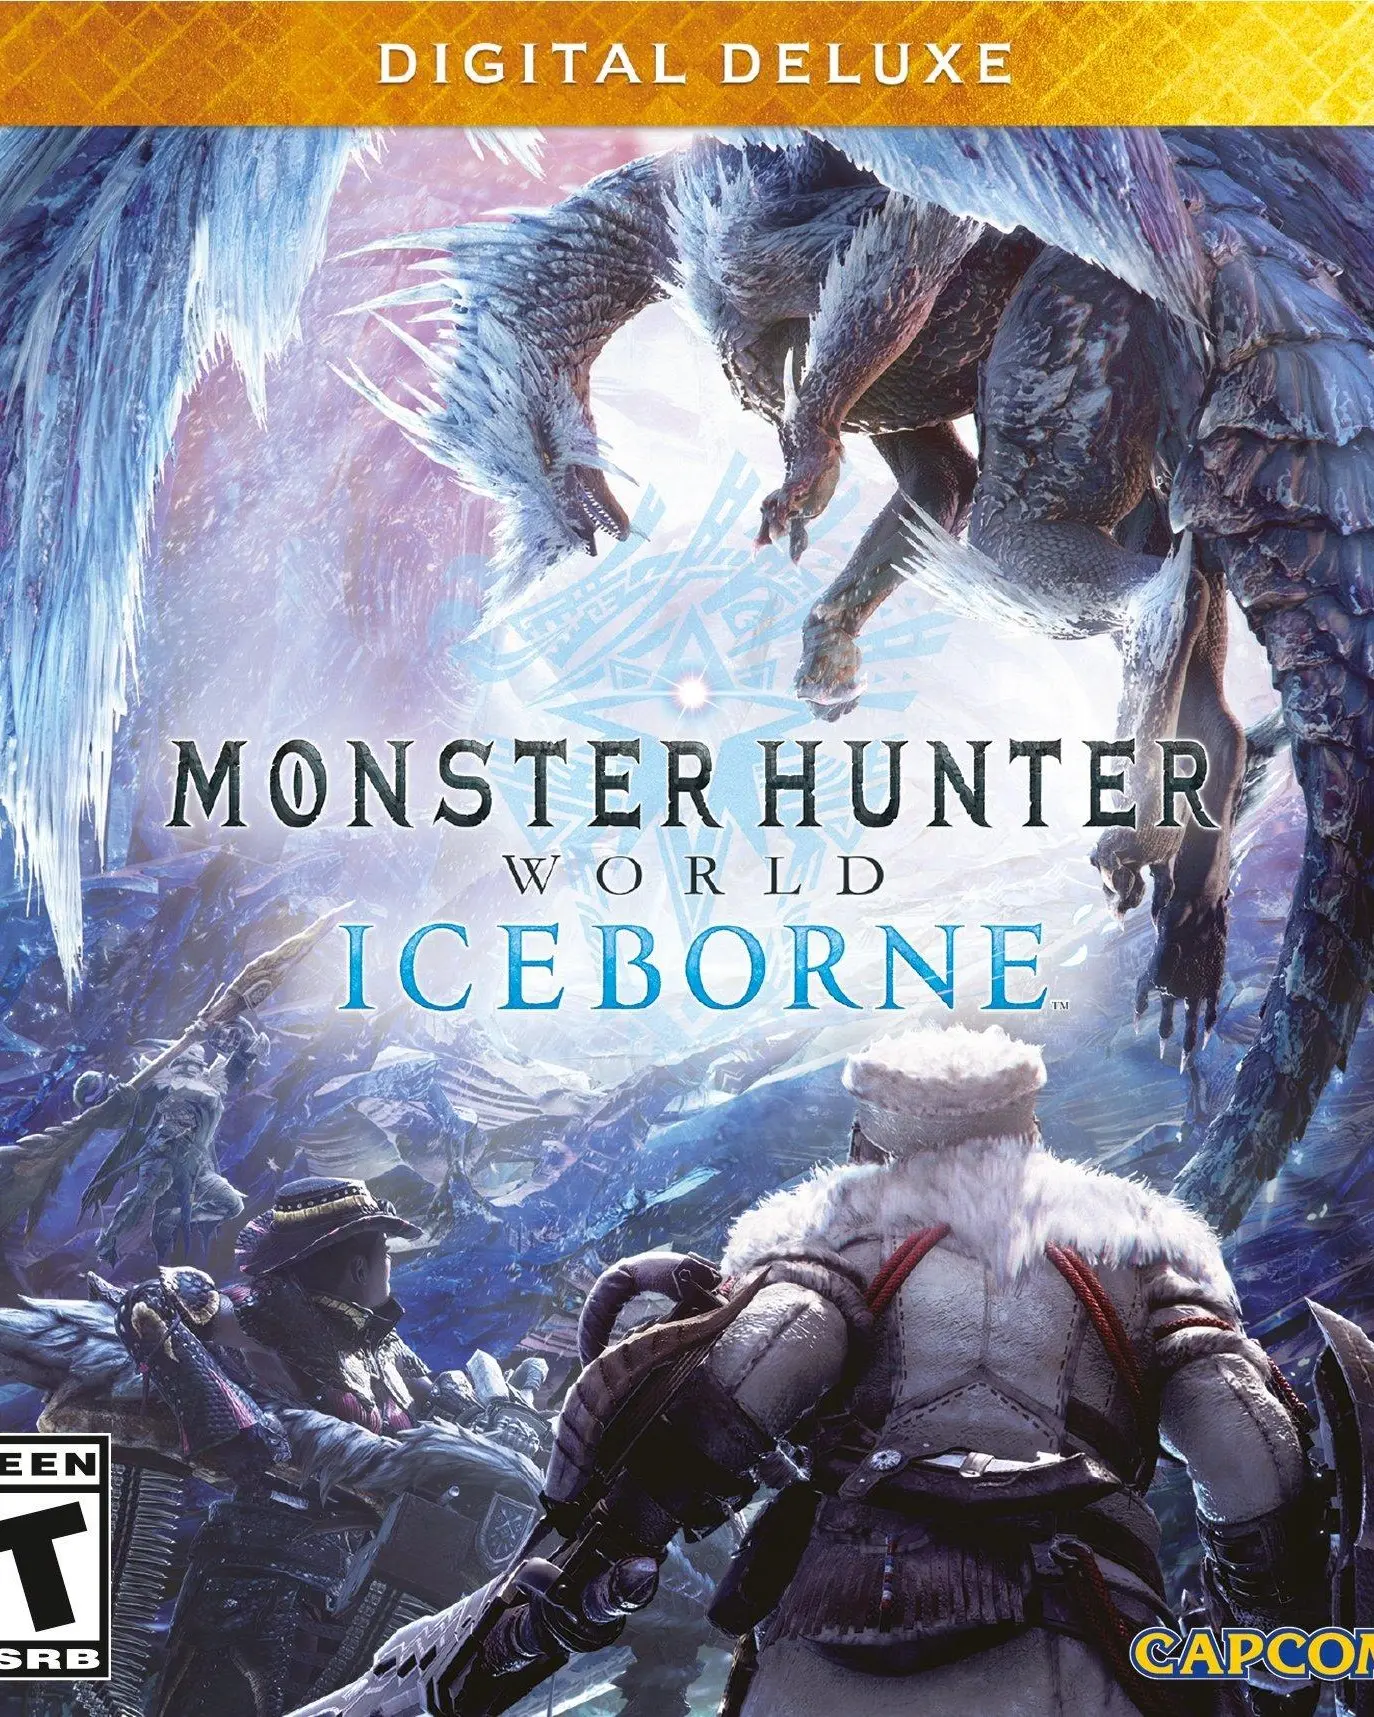 Monster Hunter World - Iceborne Deluxe Edition DLC (PC) - Steam - Digital Code